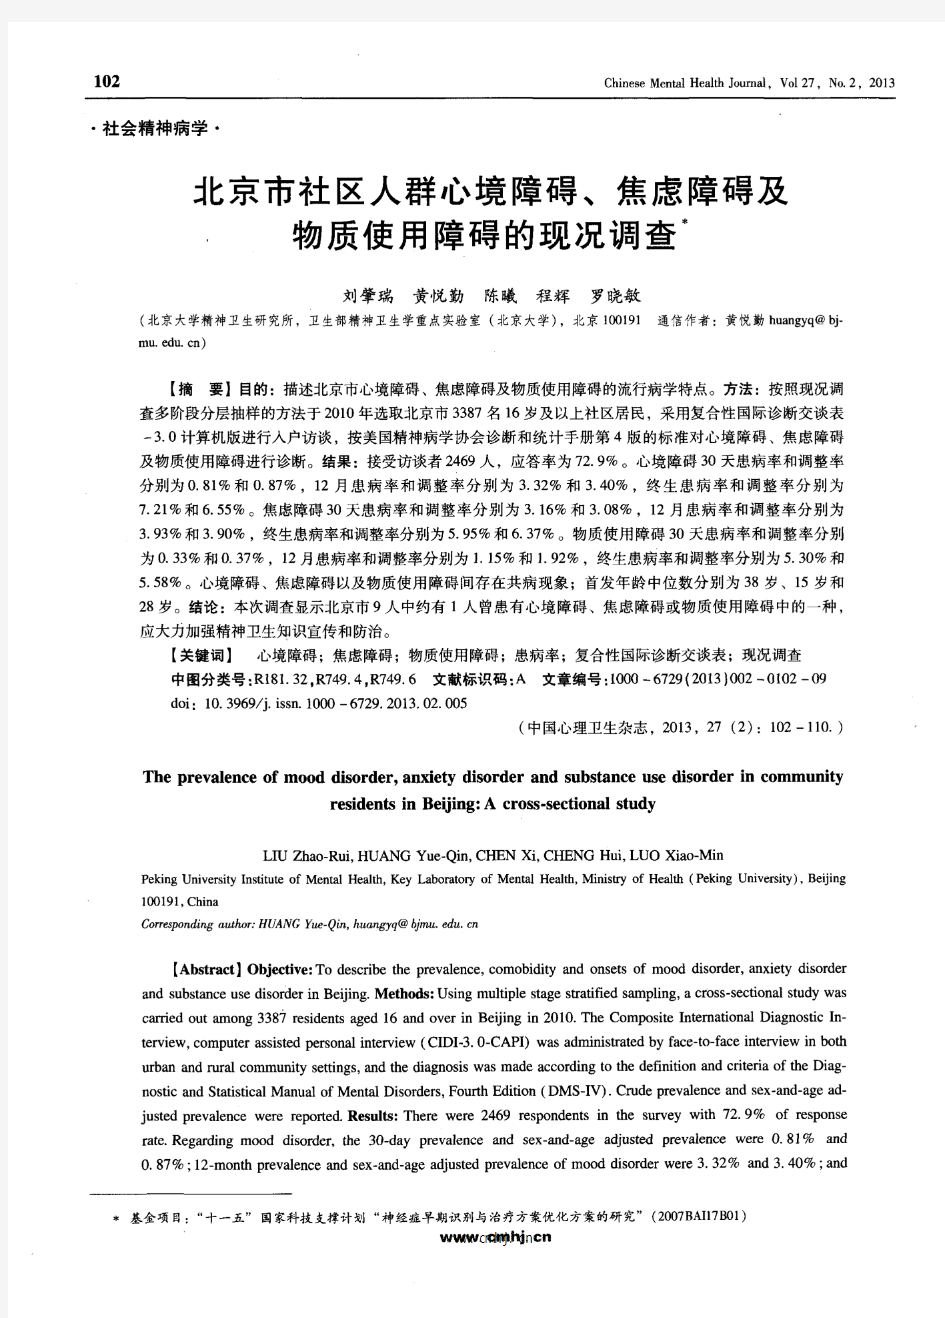 北京市社区人群心境障碍、焦虑障碍及物质使用障碍的现况调查